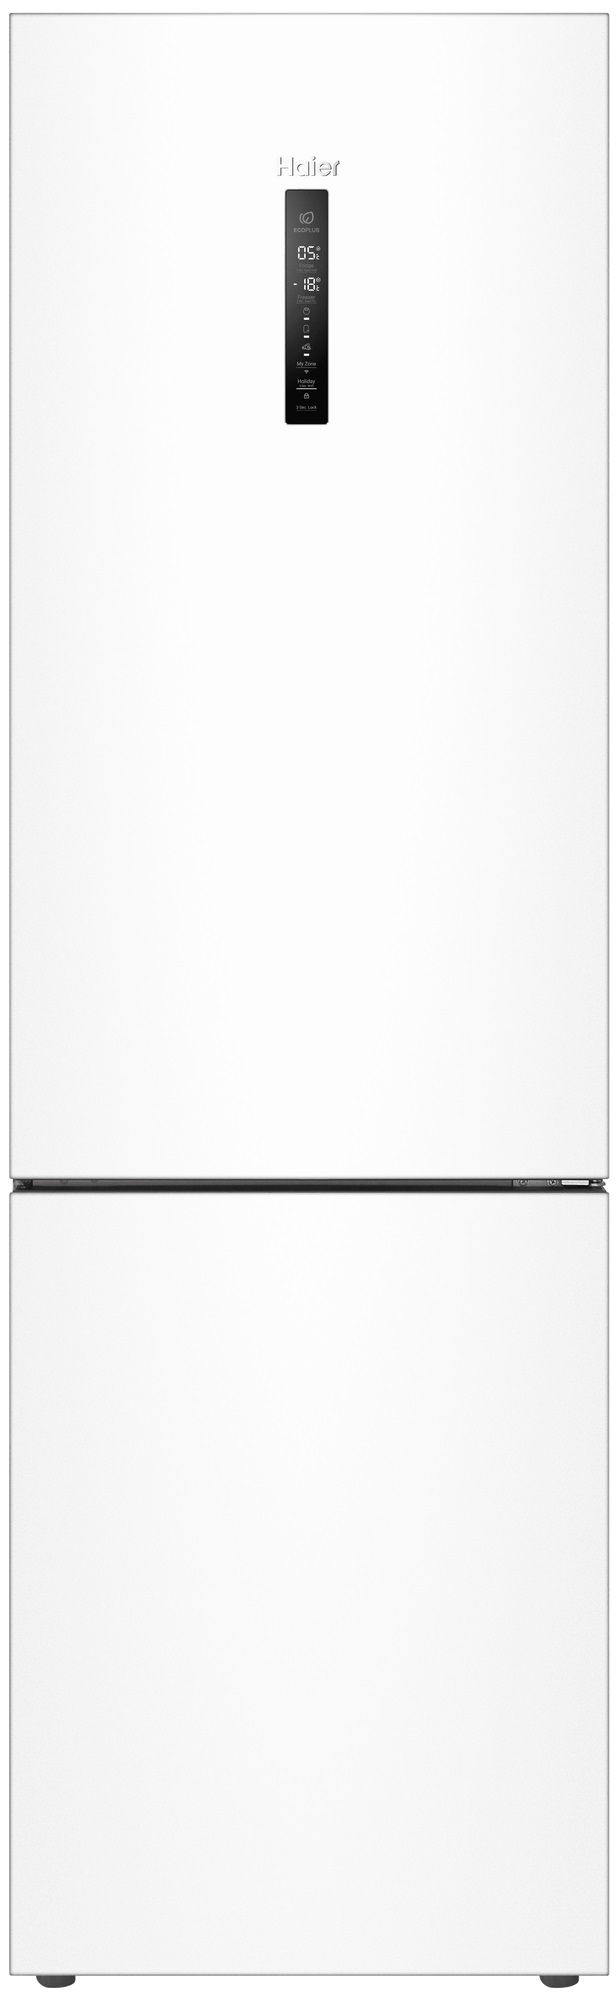 Холодильник Haier C4F640CWU1 белый многокамерный холодильник haier htf 508dgs7ru